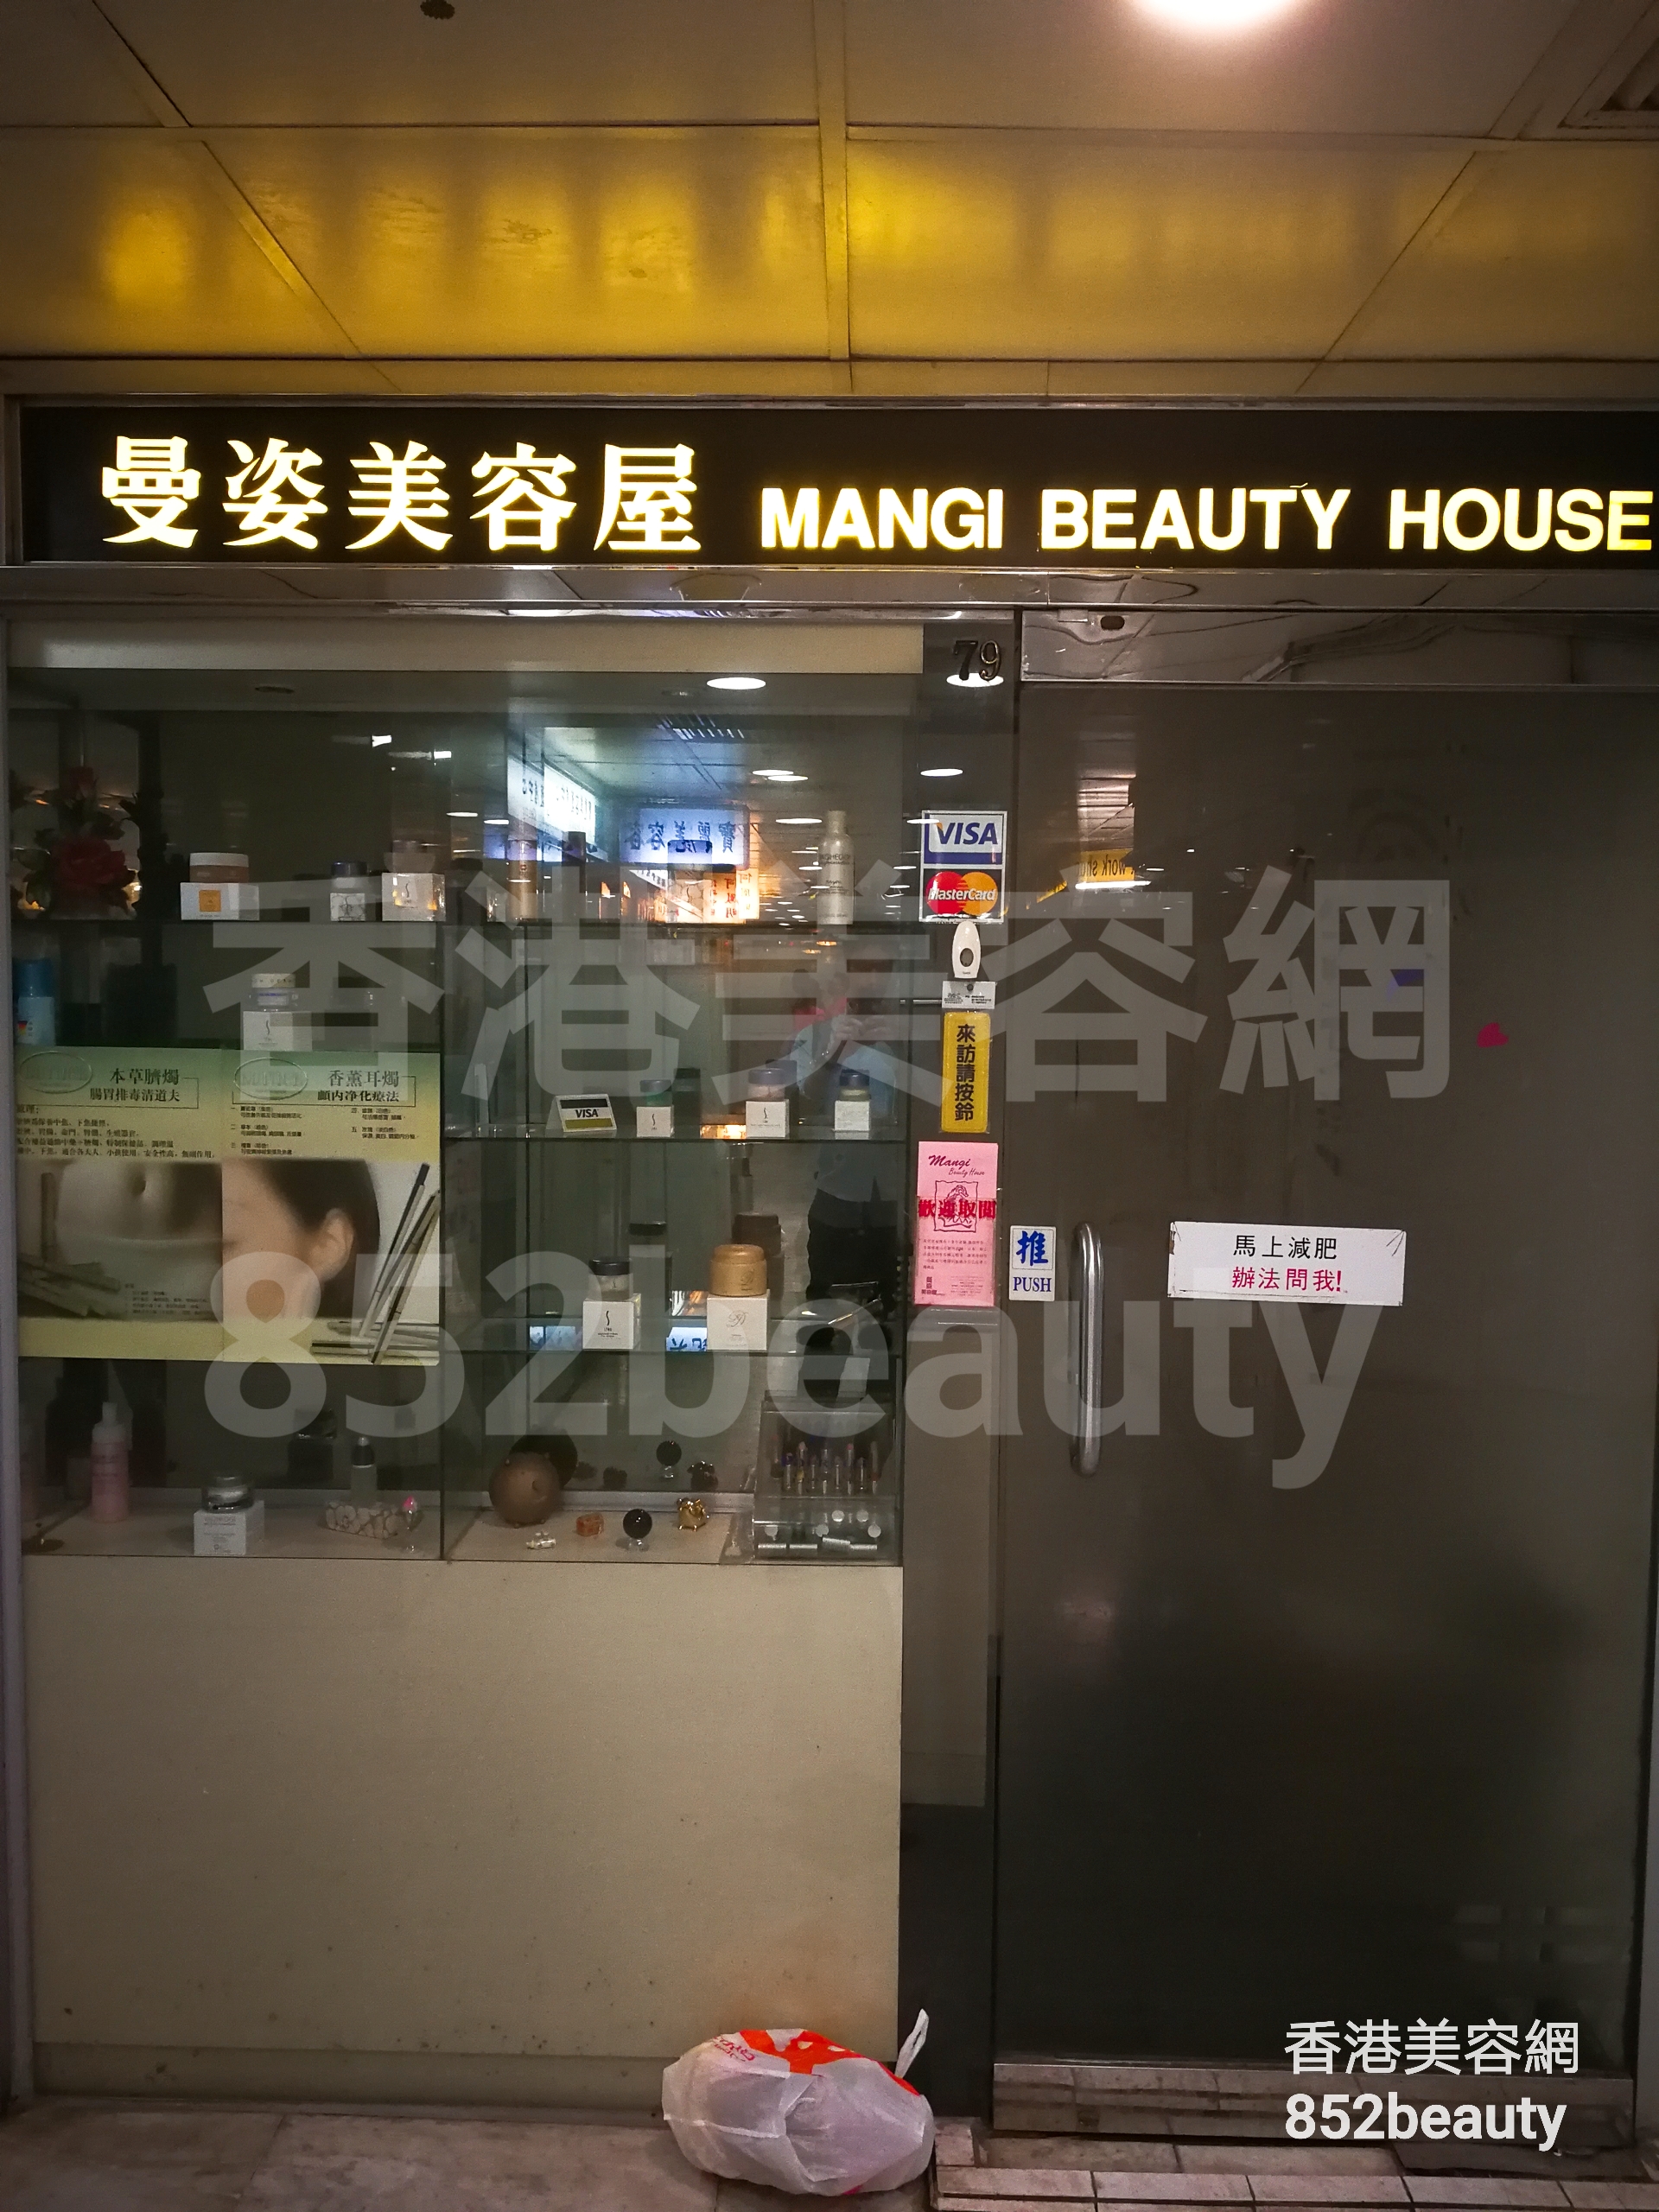 面部護理: Mangi Beauty House